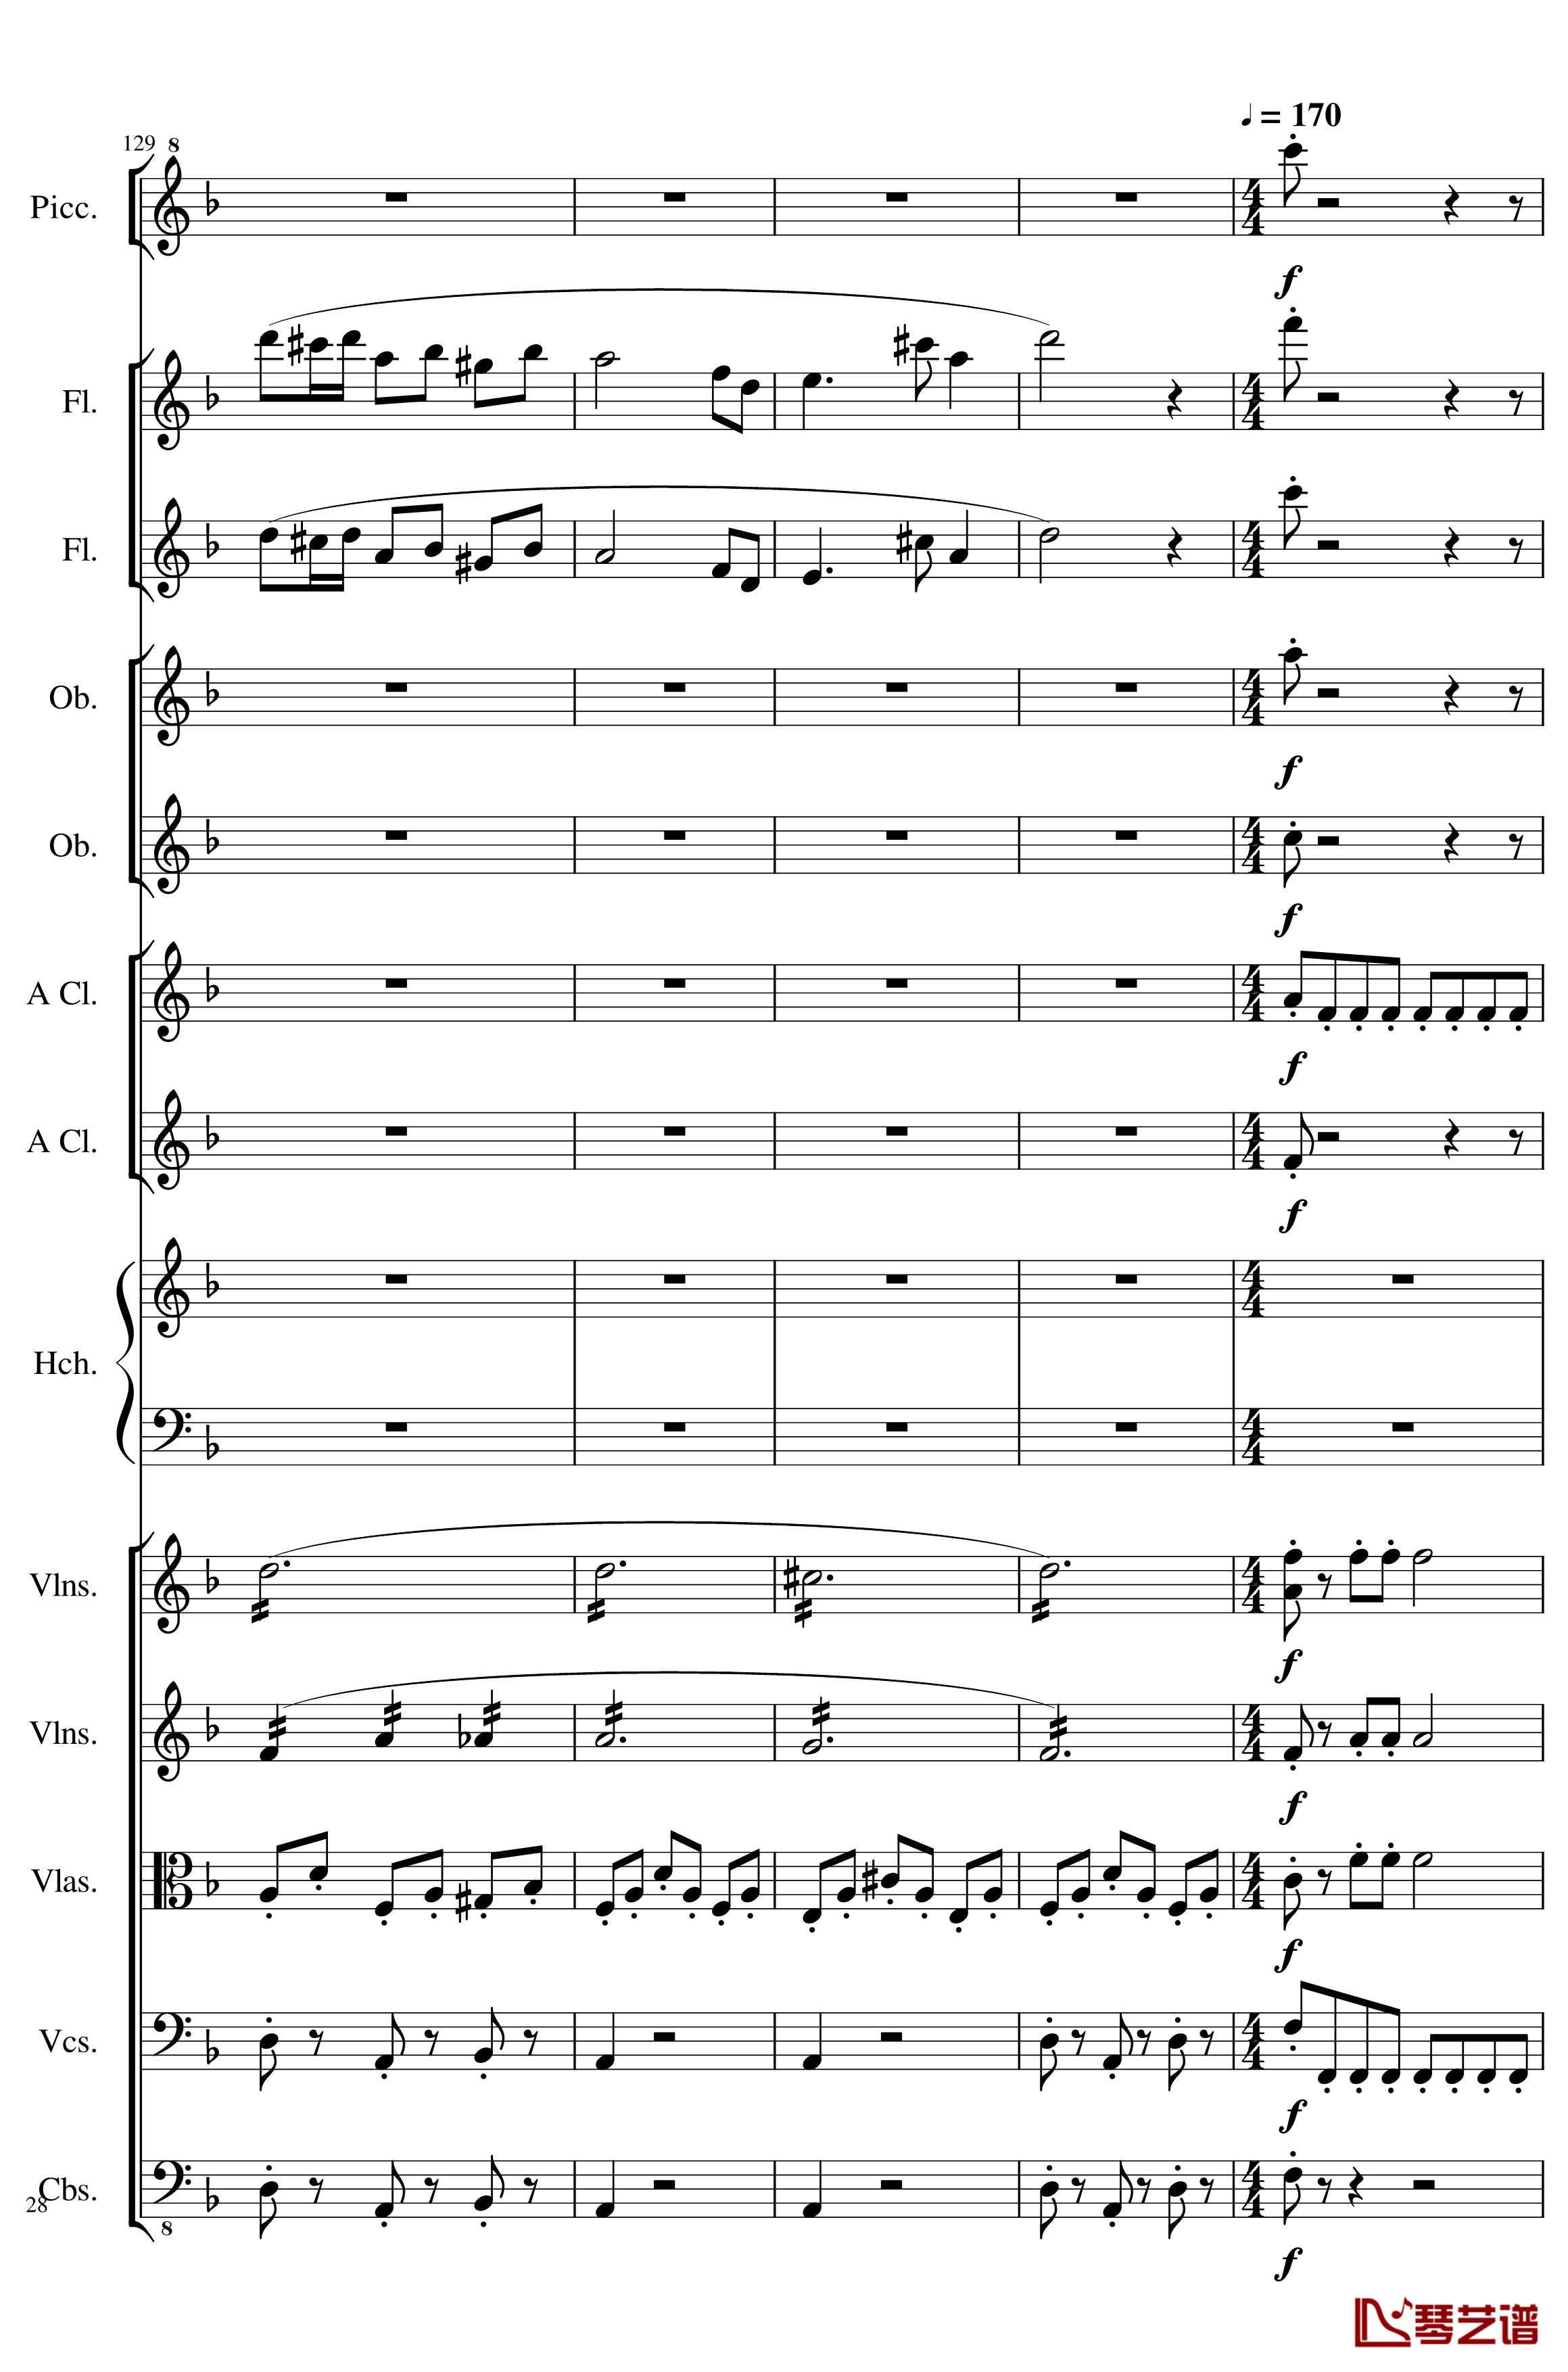 7 Contredanses No.1-7, Op.124钢琴谱-7首乡村舞曲，第一至第七，作品124-一个球28